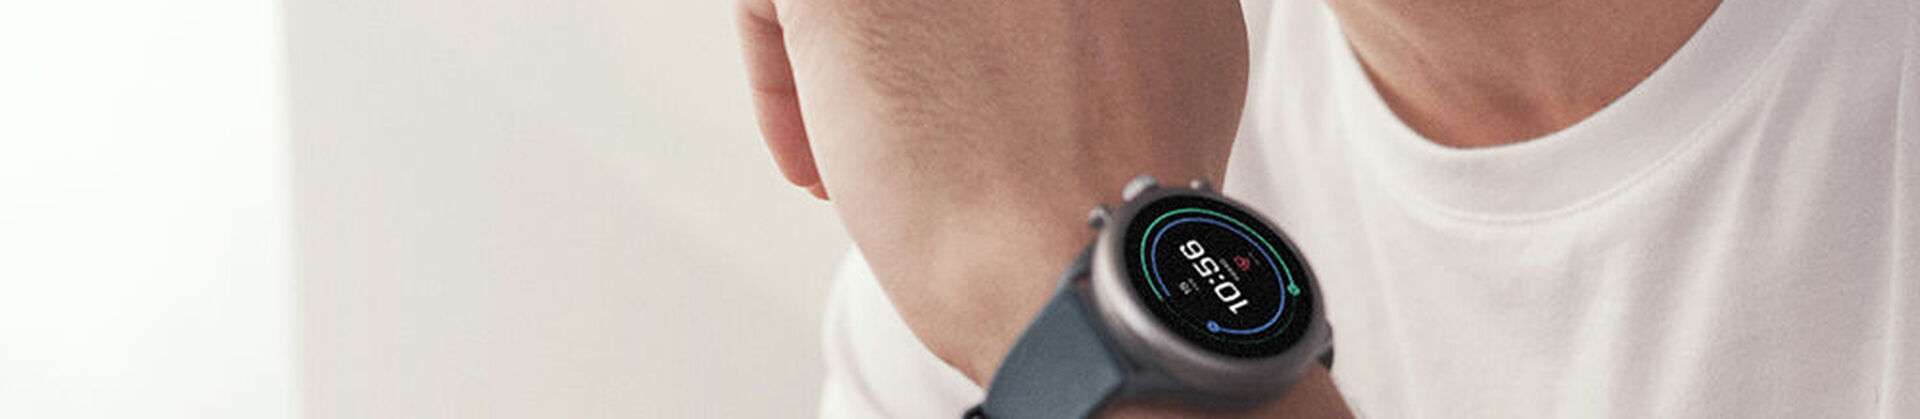 Payer sans contact avec votre montre intelligente - Aide Wear OS